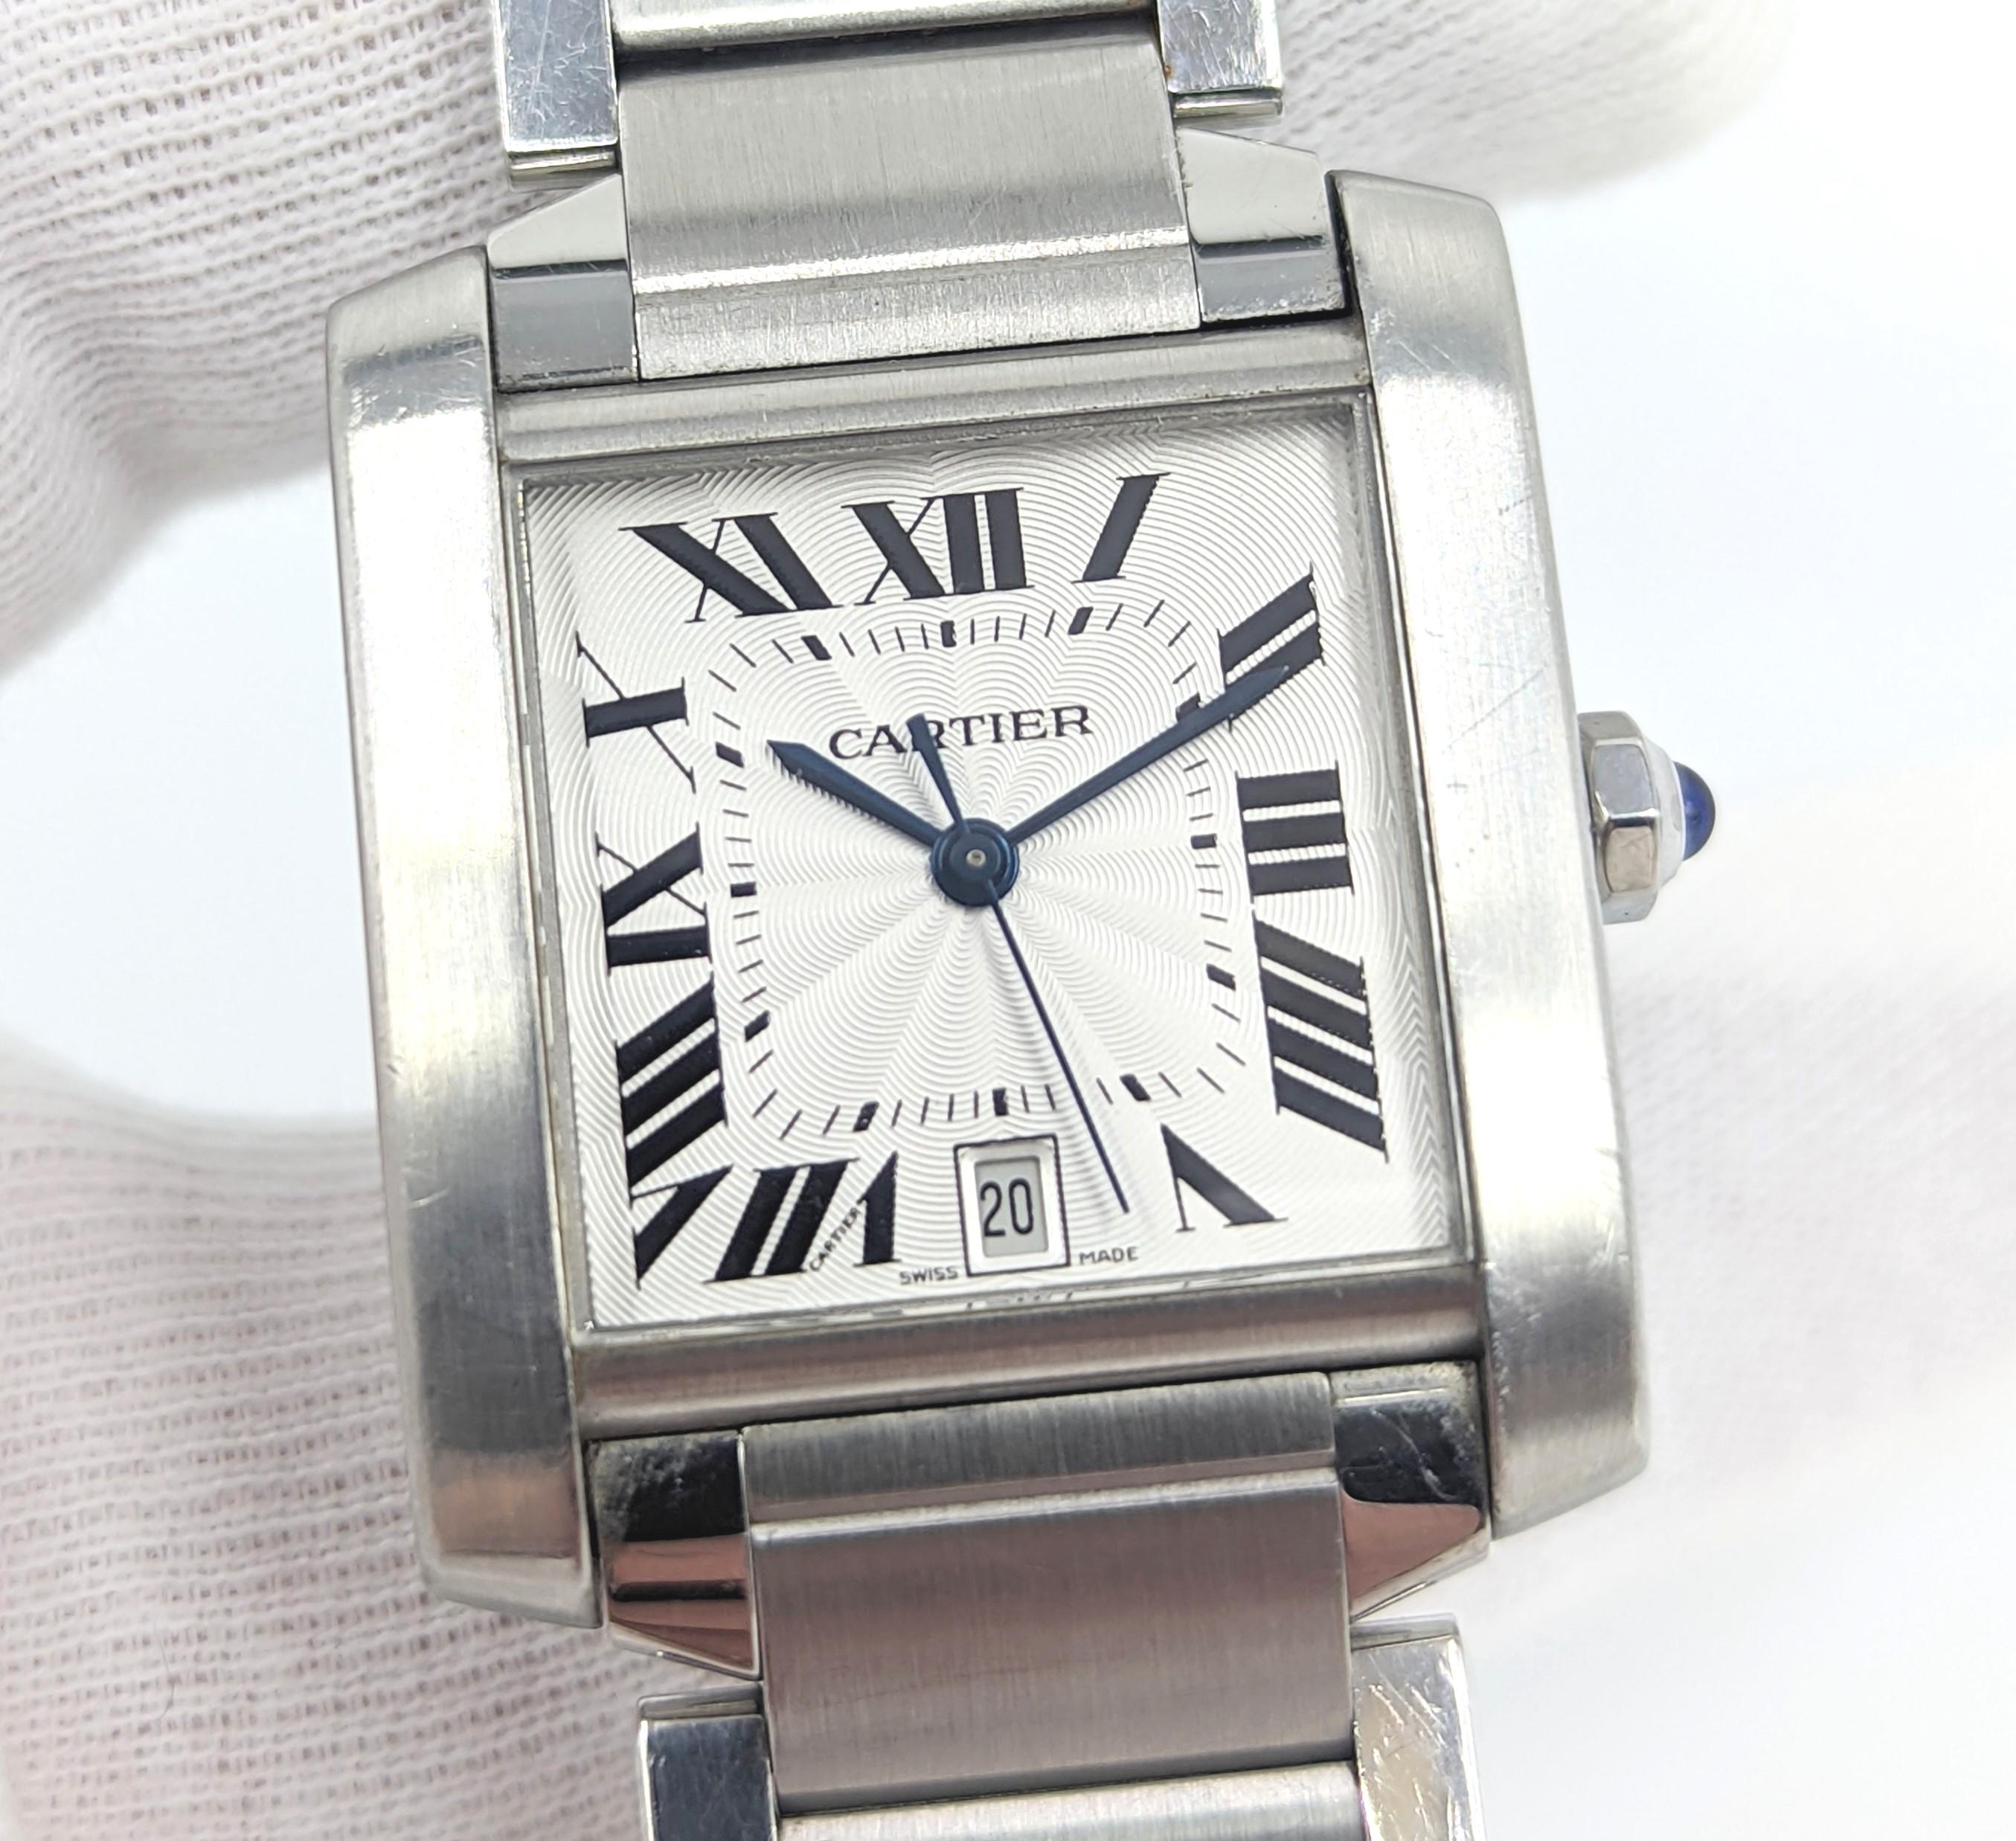 Une montre bracelet Tank Francaise de Cartier de taille moyenne (32mm) en acier inoxydable (Ref.2302). Le mouvement de fabrication suisse est à remontage automatique. Le cadran est argenté avec des index en chiffres romains noirs et un affichage de